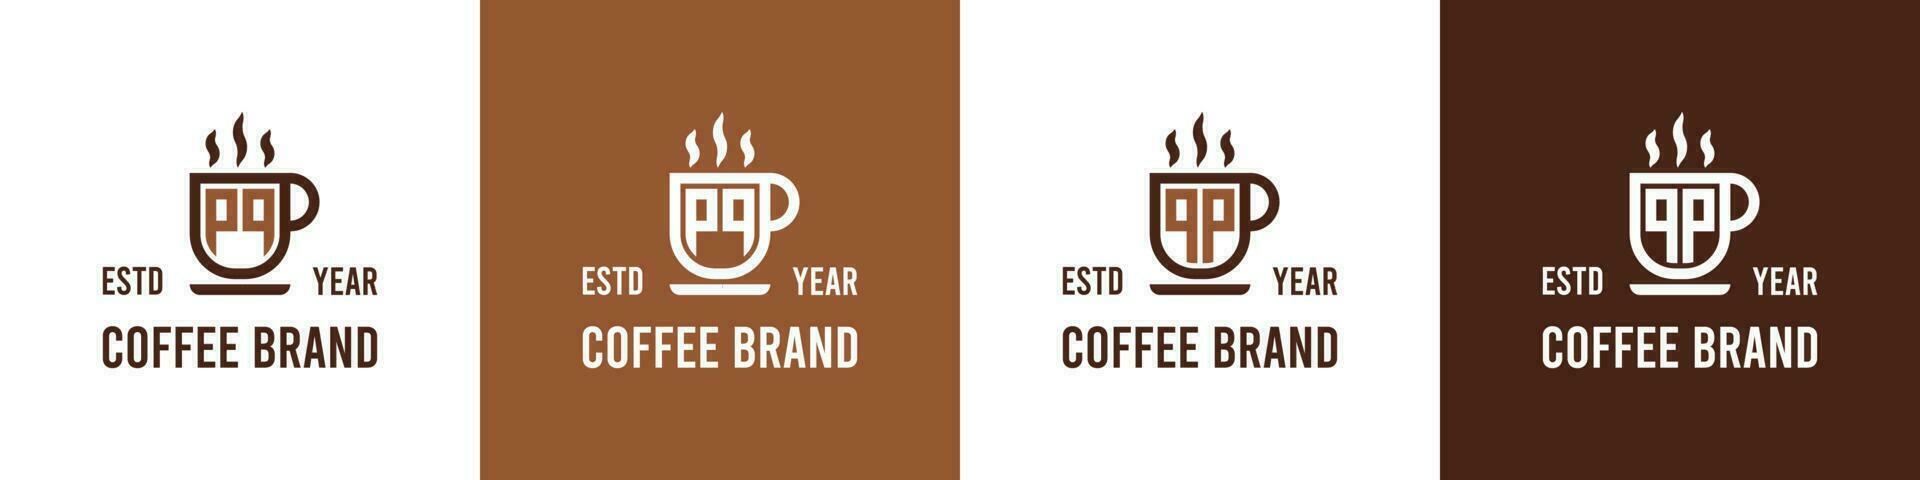 letra pq y qp café logo, adecuado para ninguna negocio relacionado a café, té, o otro con pq o qp iniciales. vector